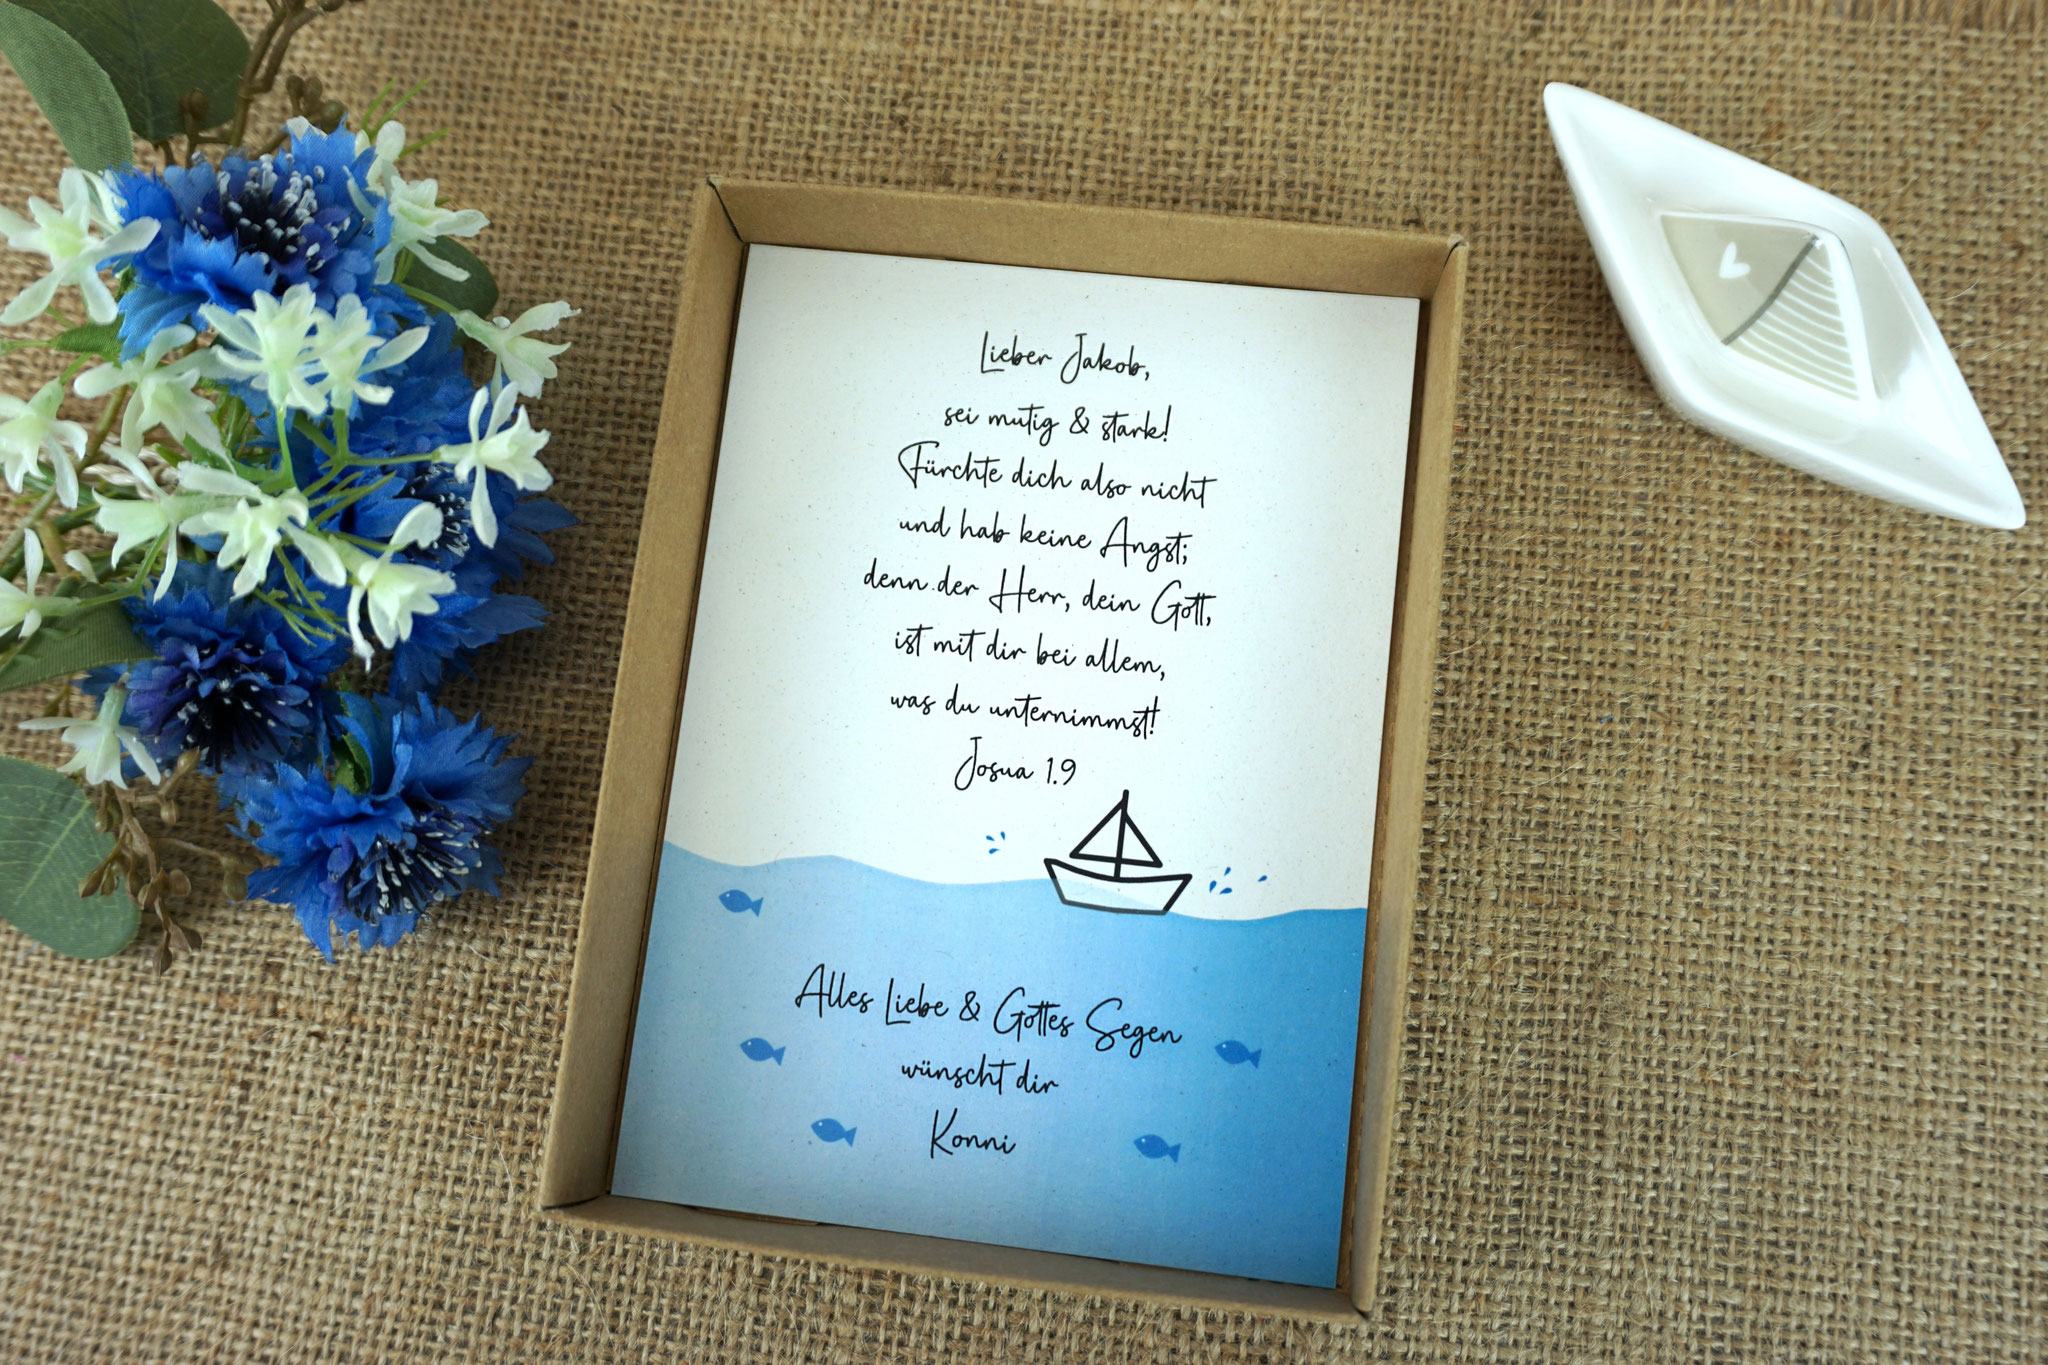 Geschenkebox zur Taufe - Design Boot Blau - Text "sei mutig & stark"